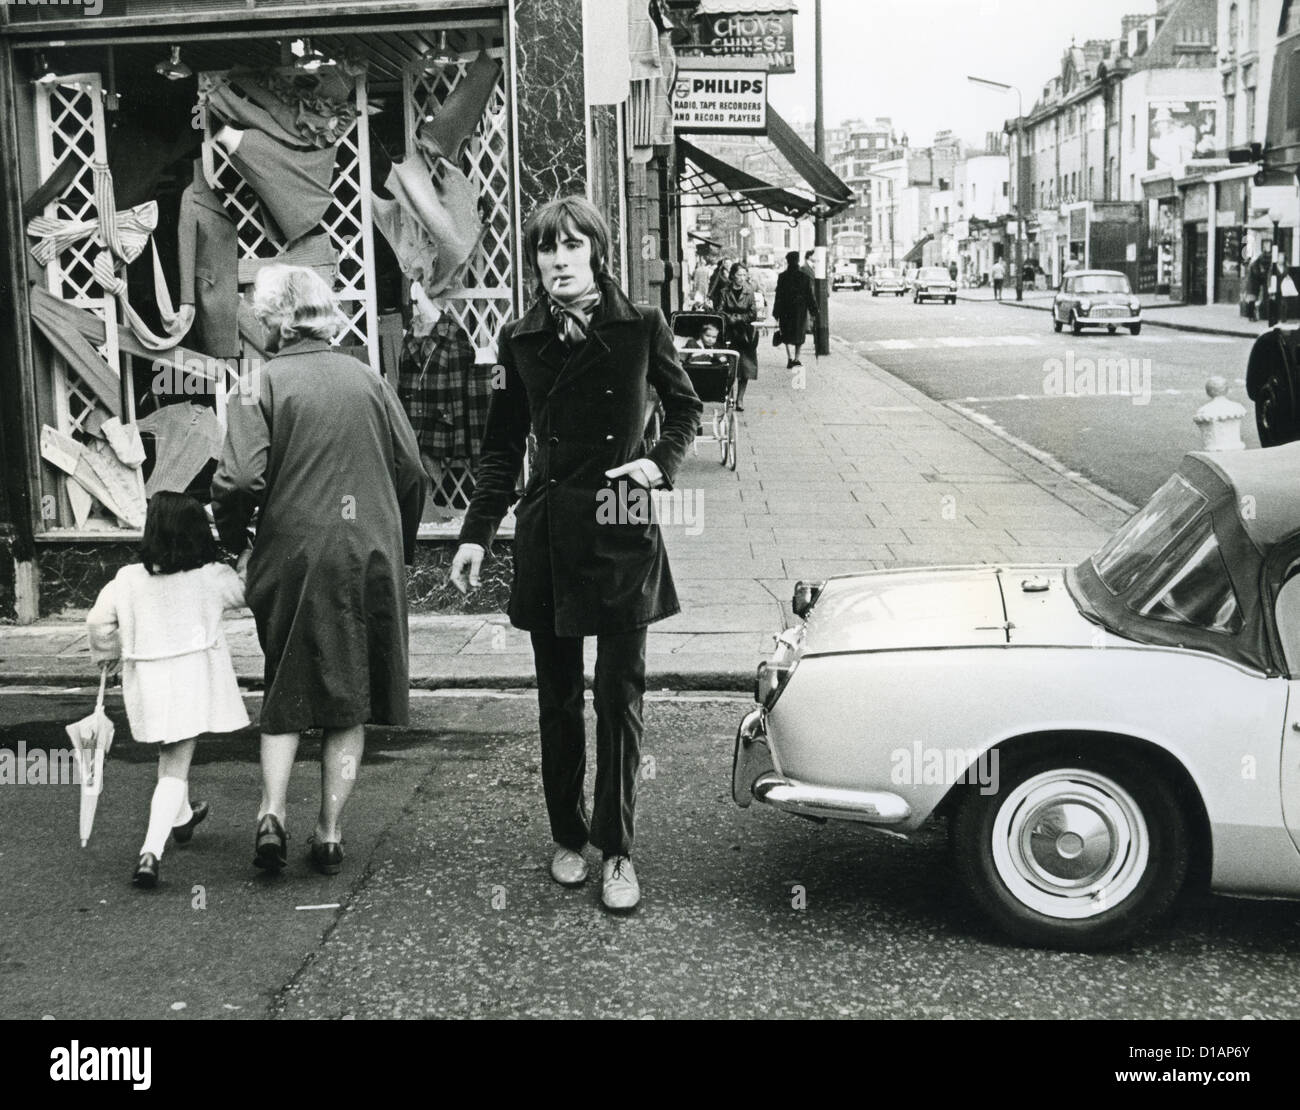 BILL CHENAIL Englisch männliches Modell im Mai 1967 außerhalb des englischen Jungen Model Agentur in London. Foto: Tony Gale Stockfoto